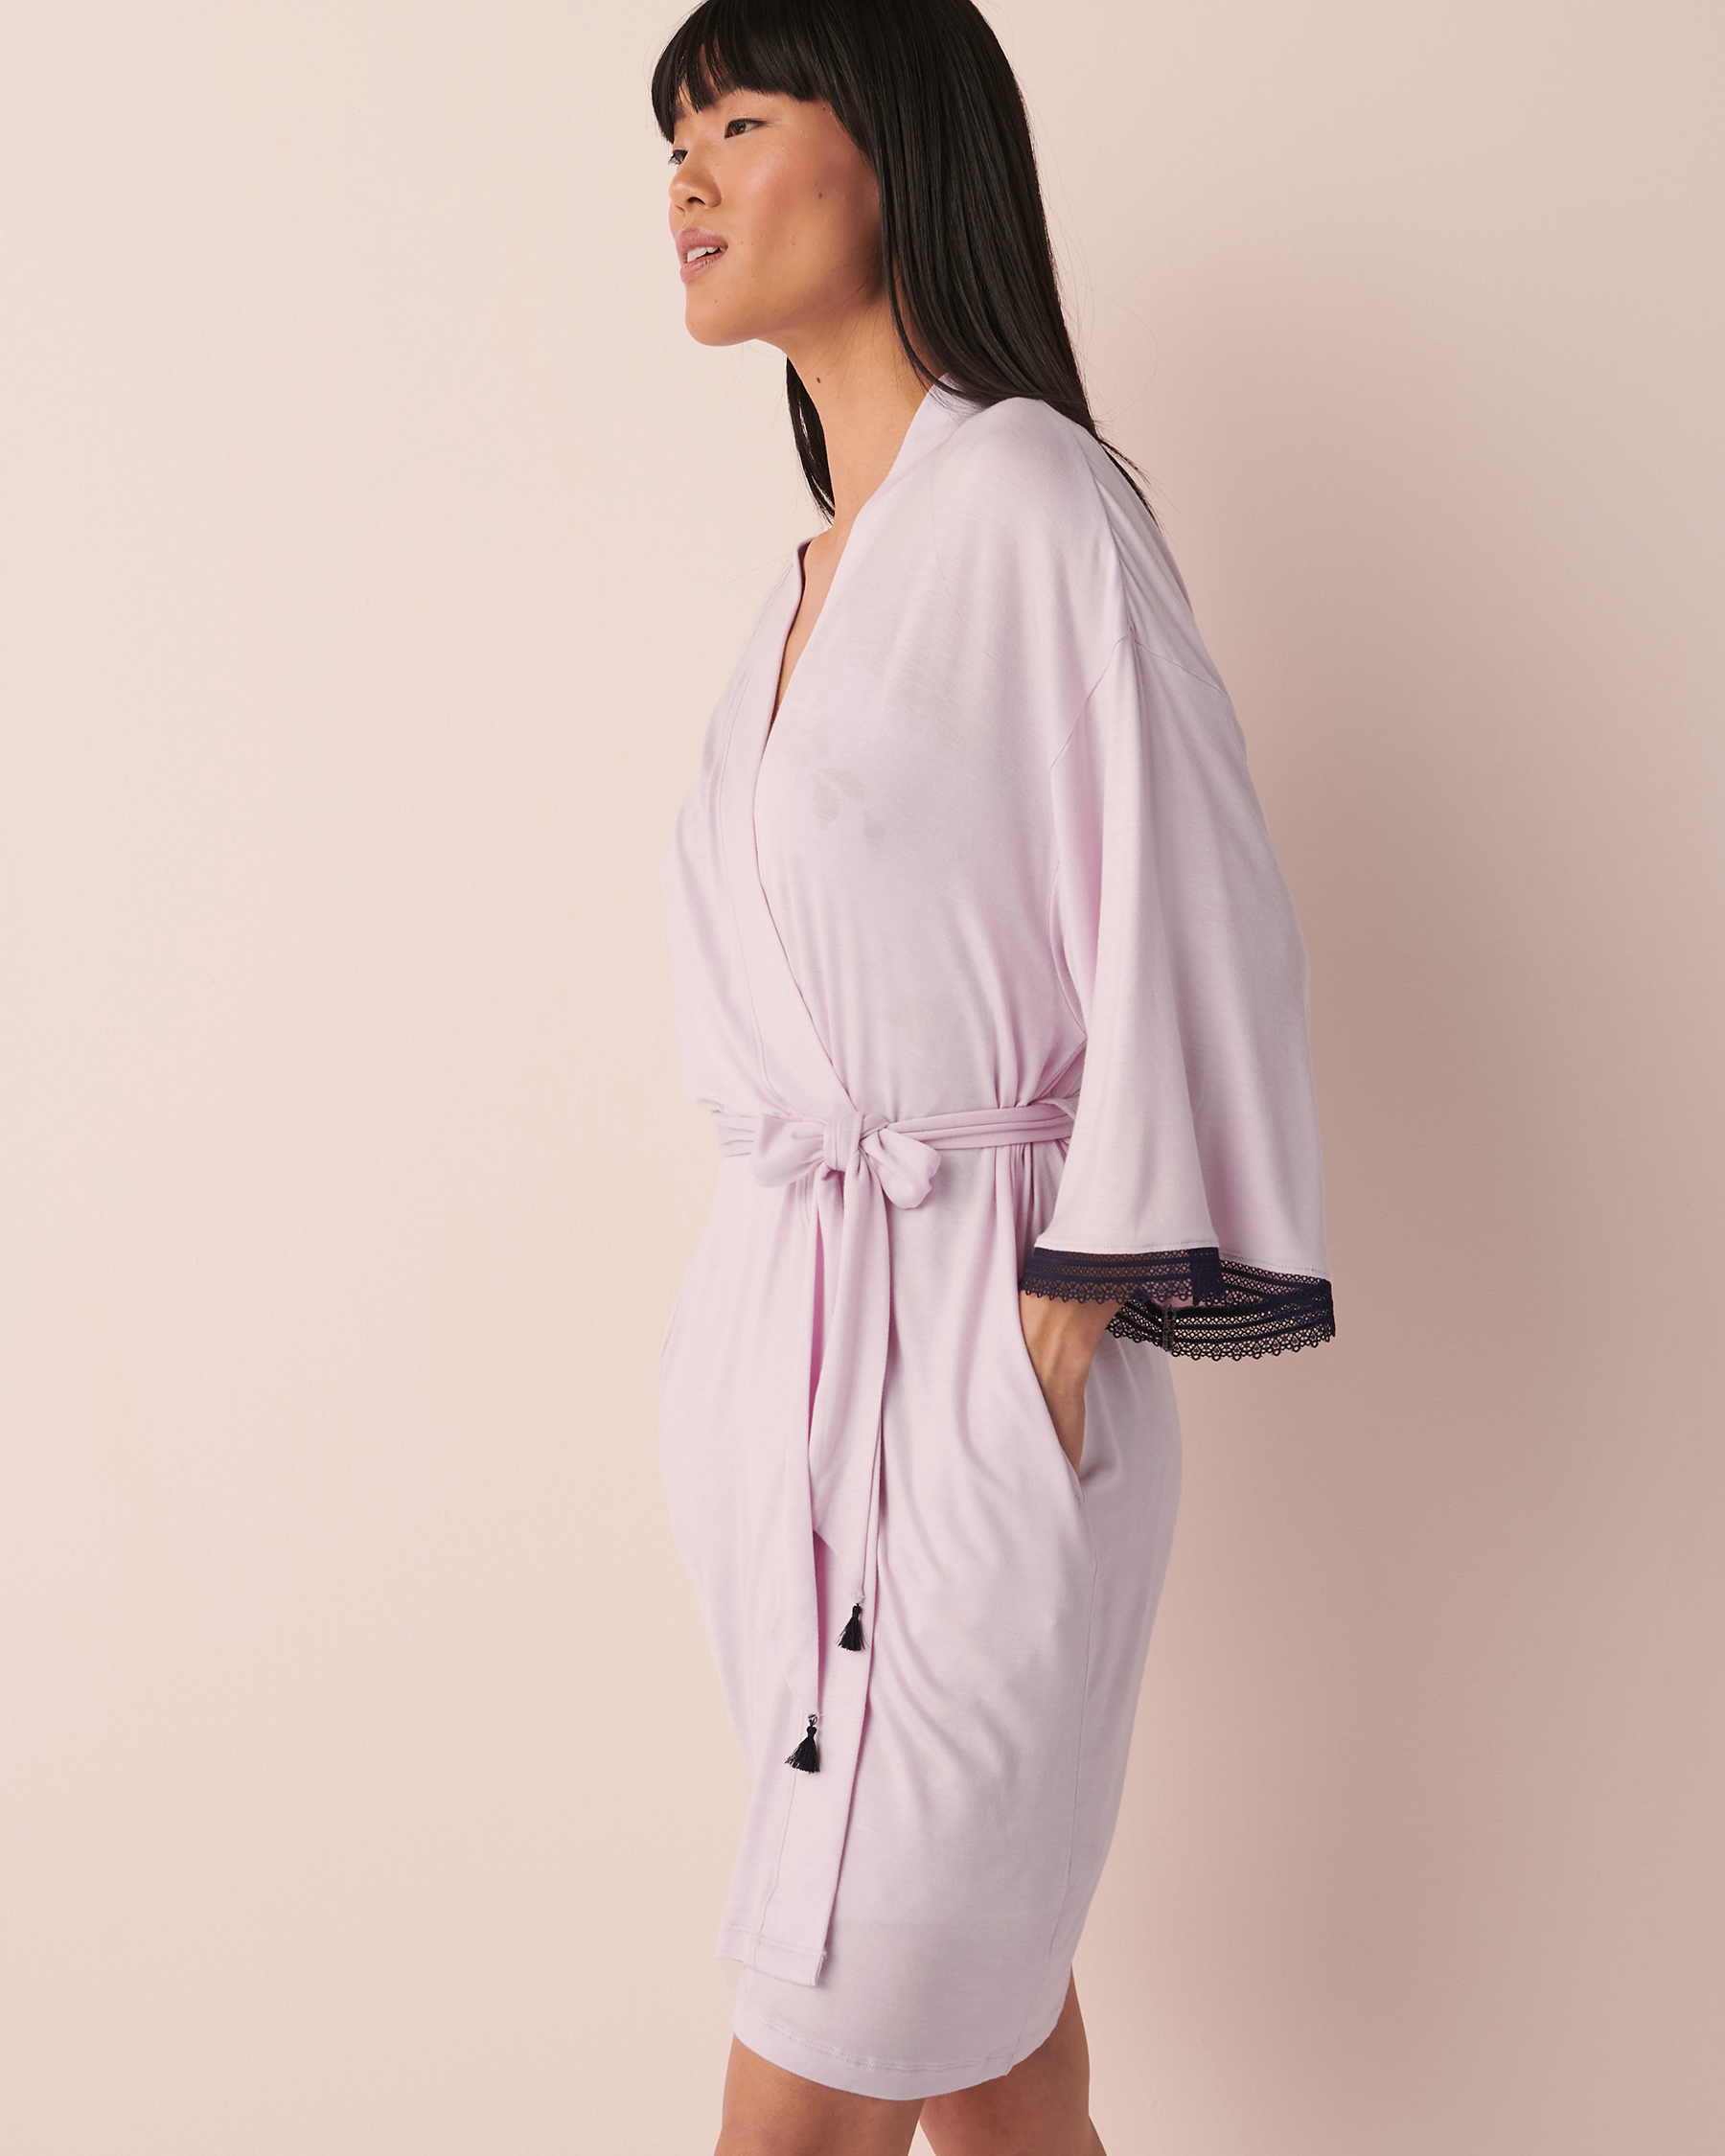 La Vie en Rose Soft Jersey Lace Trim Kimono. 3